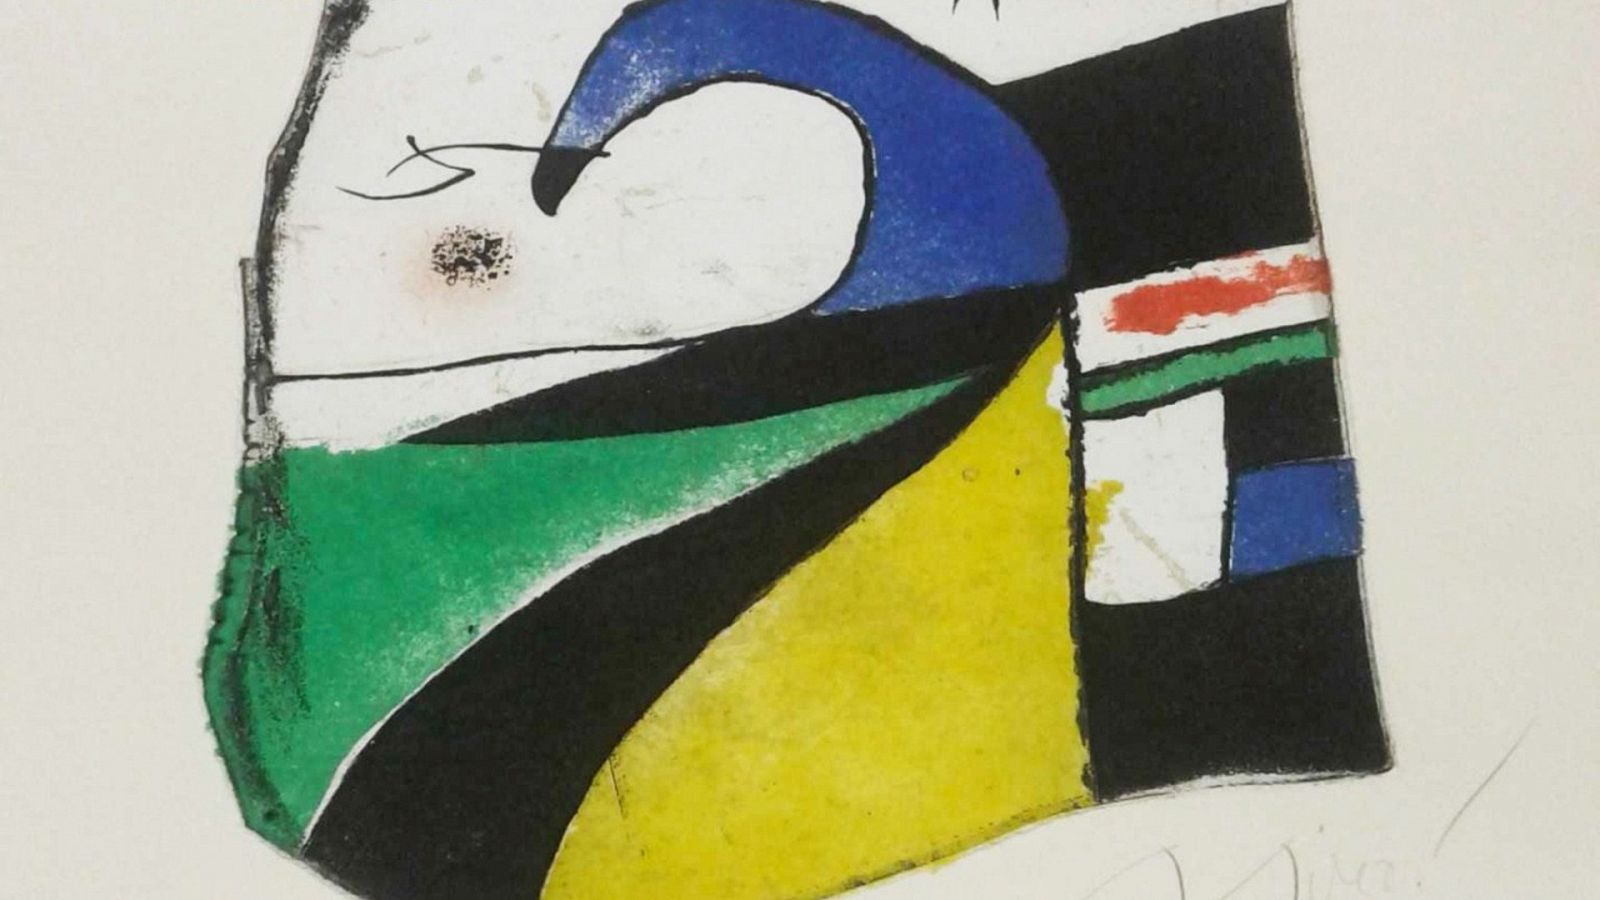 Grabado de Joan Miró valorado en 10.000 euros, desaparecido y hallado en una casa de subastas en Londres